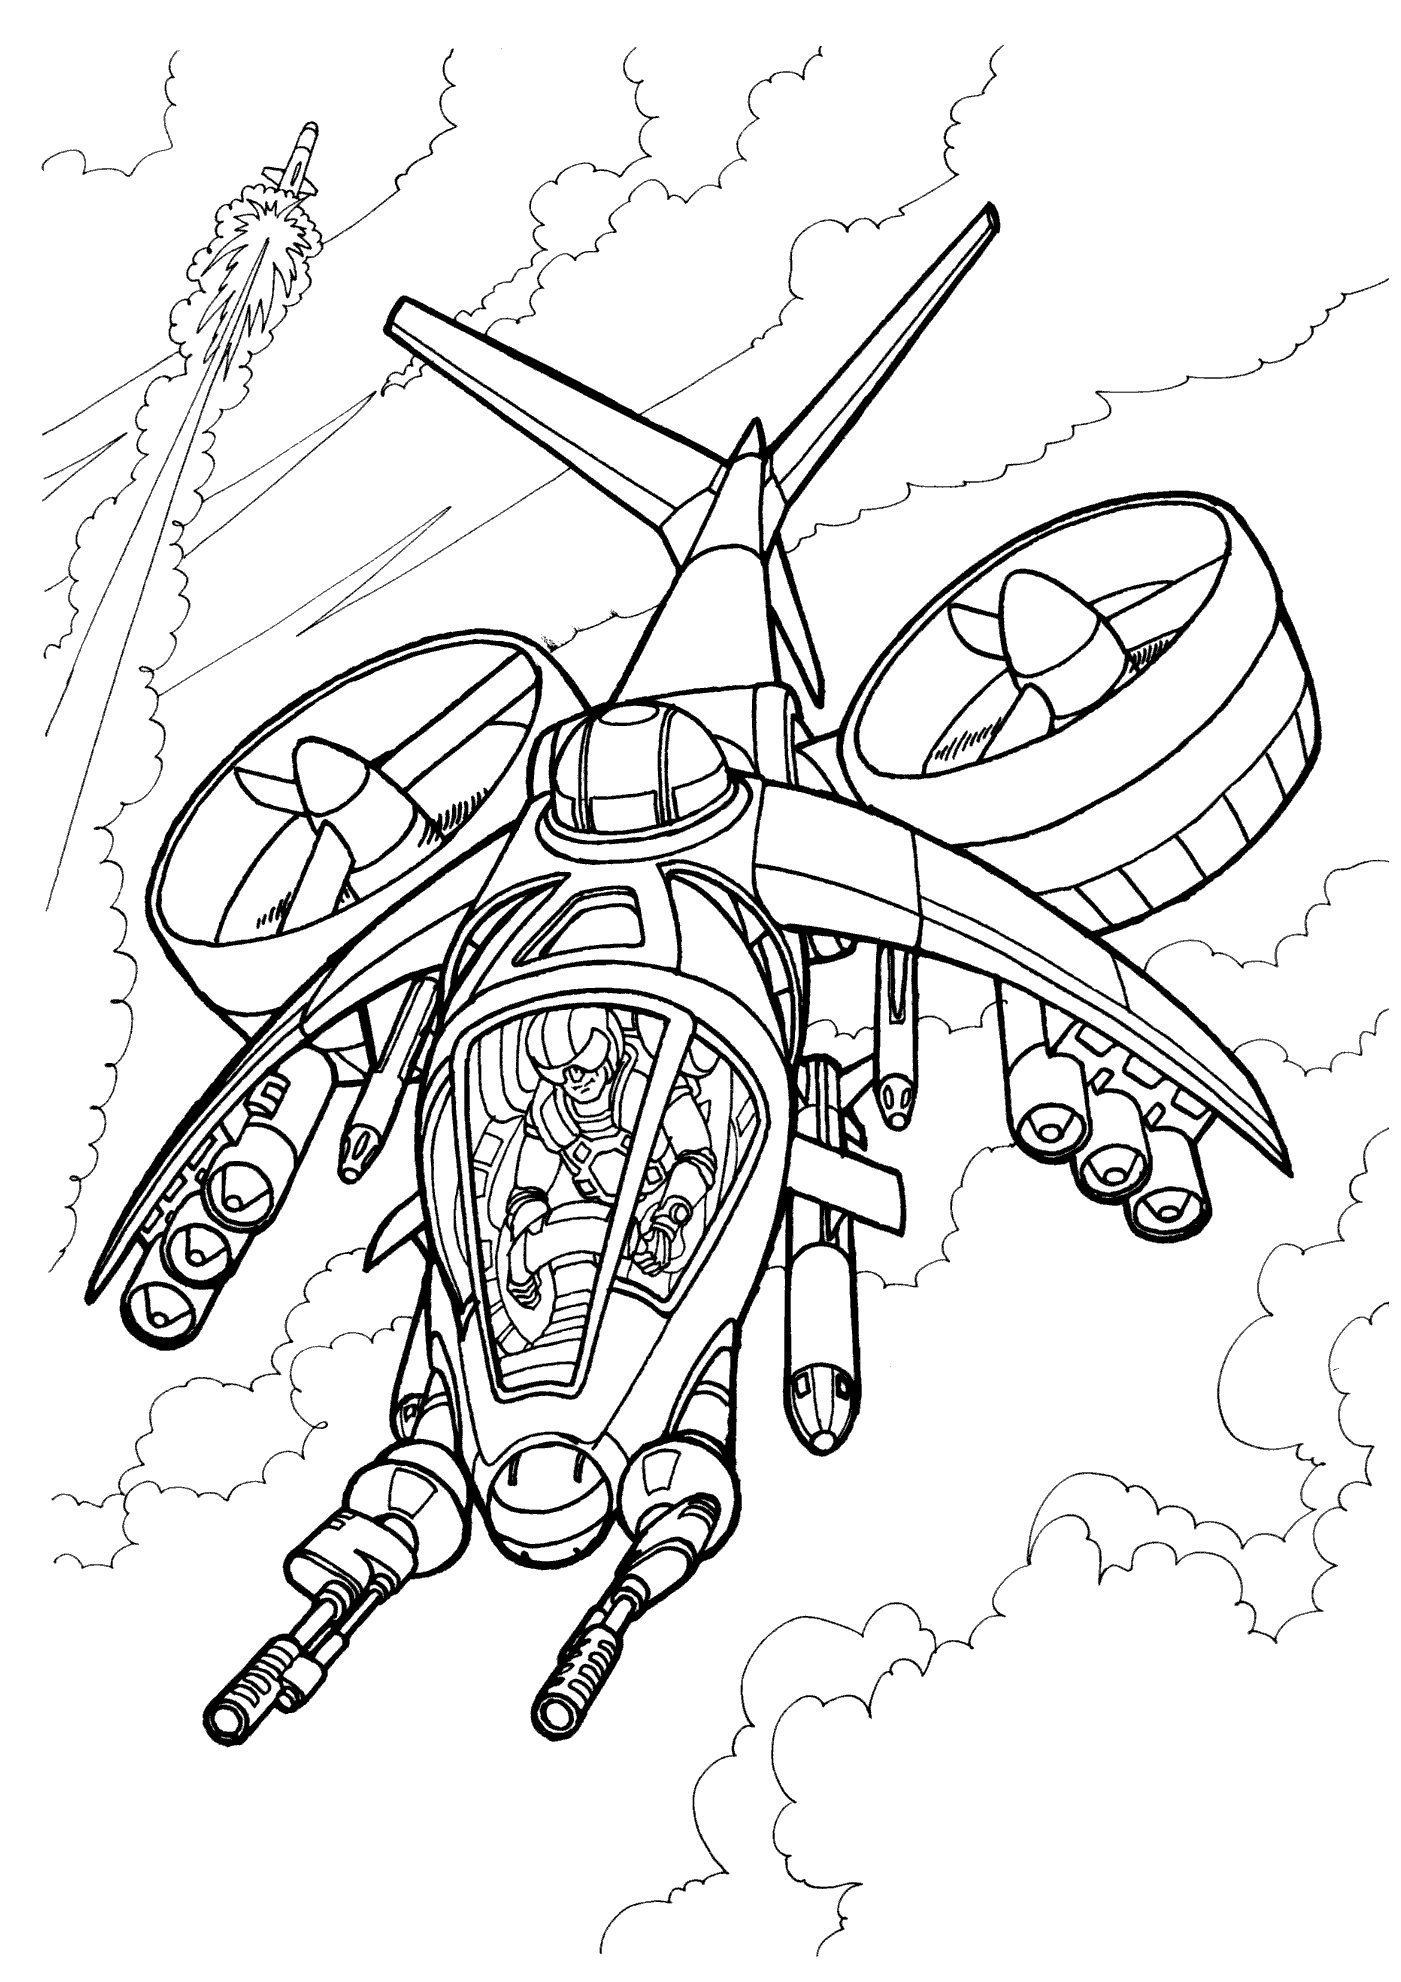 Dibujo para colorear - Helicóptero militar del futuro